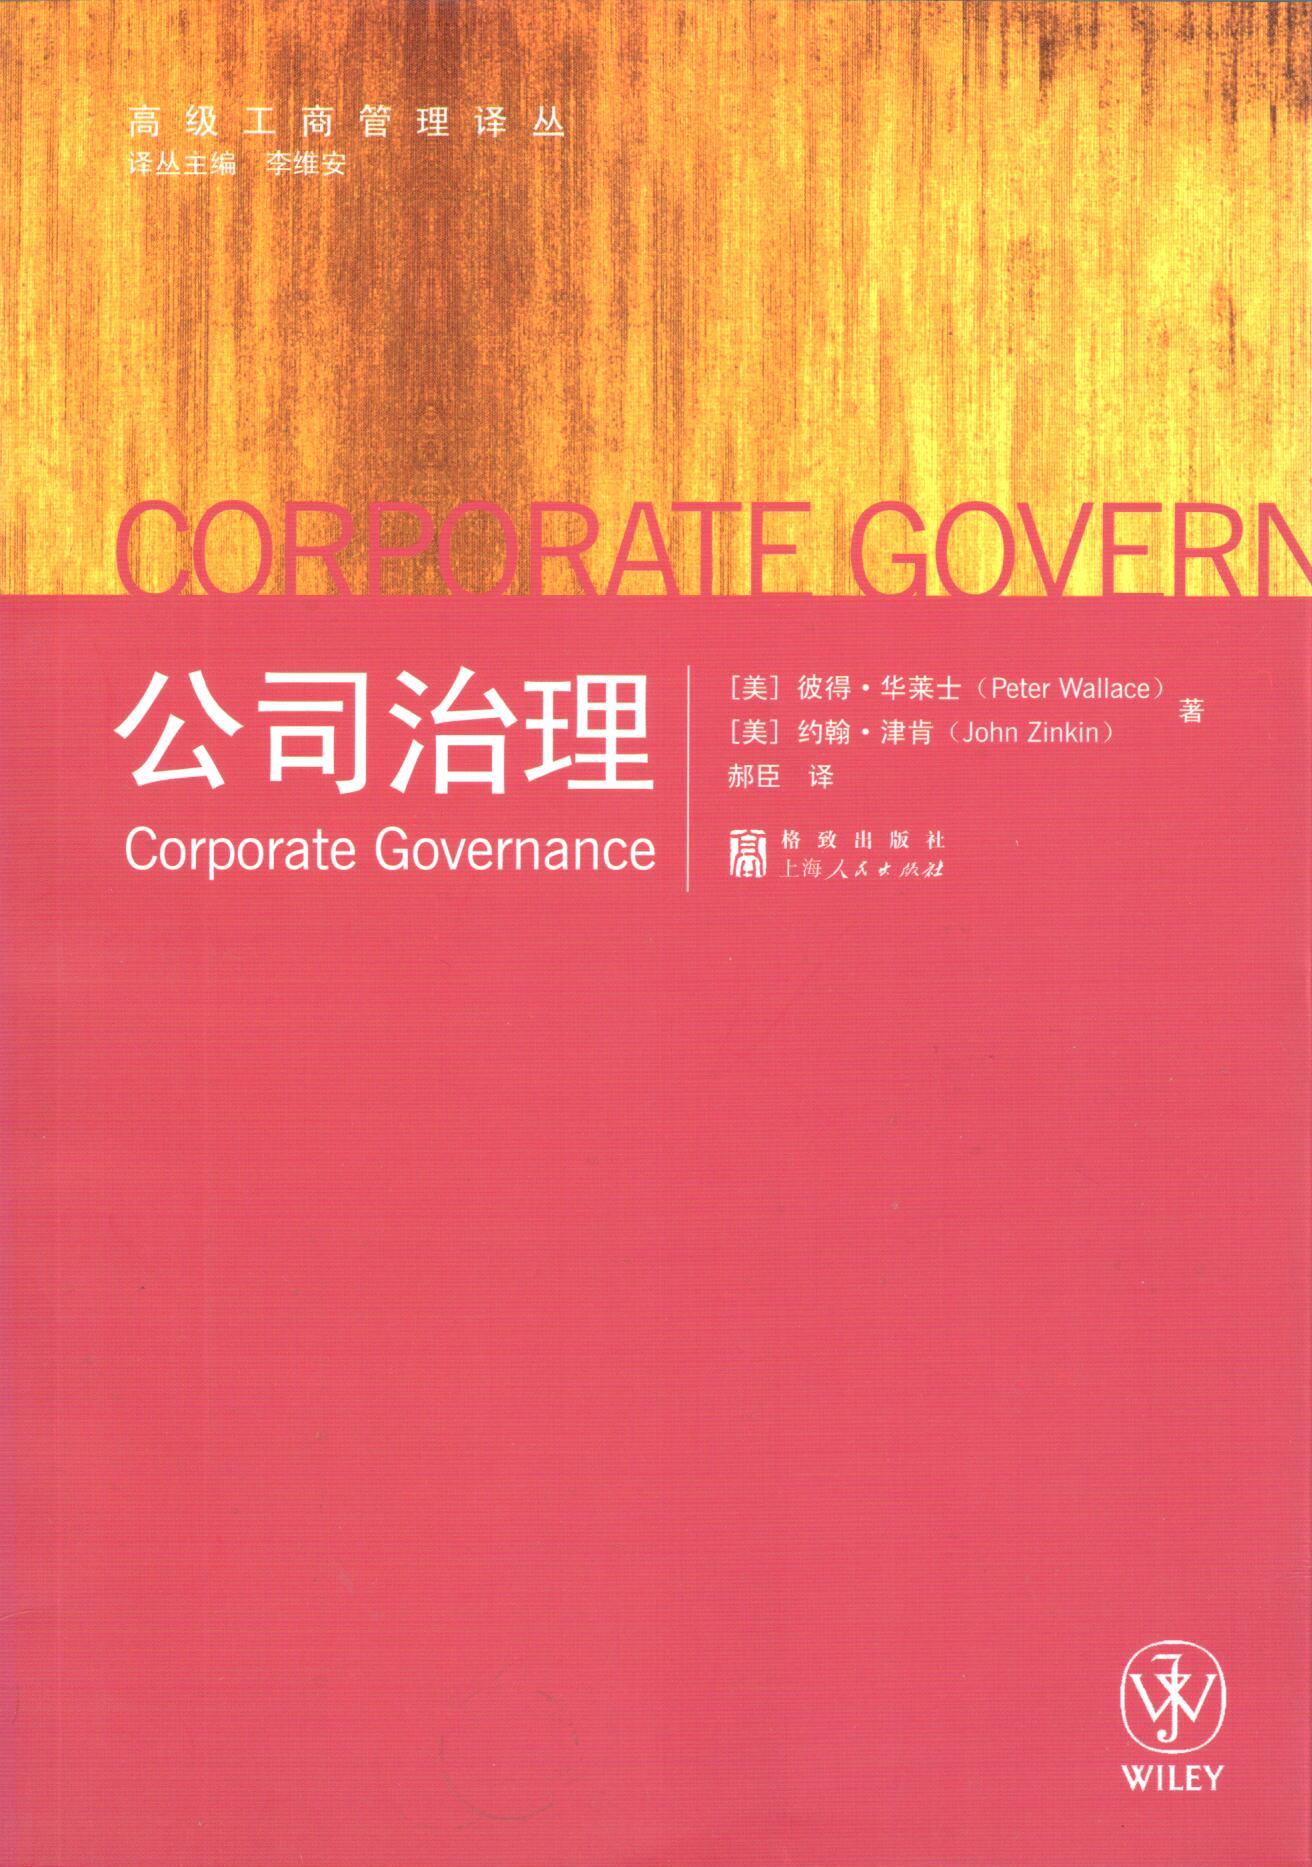 公司治理(2009年格致出版社、上海人民出版社出版圖書)